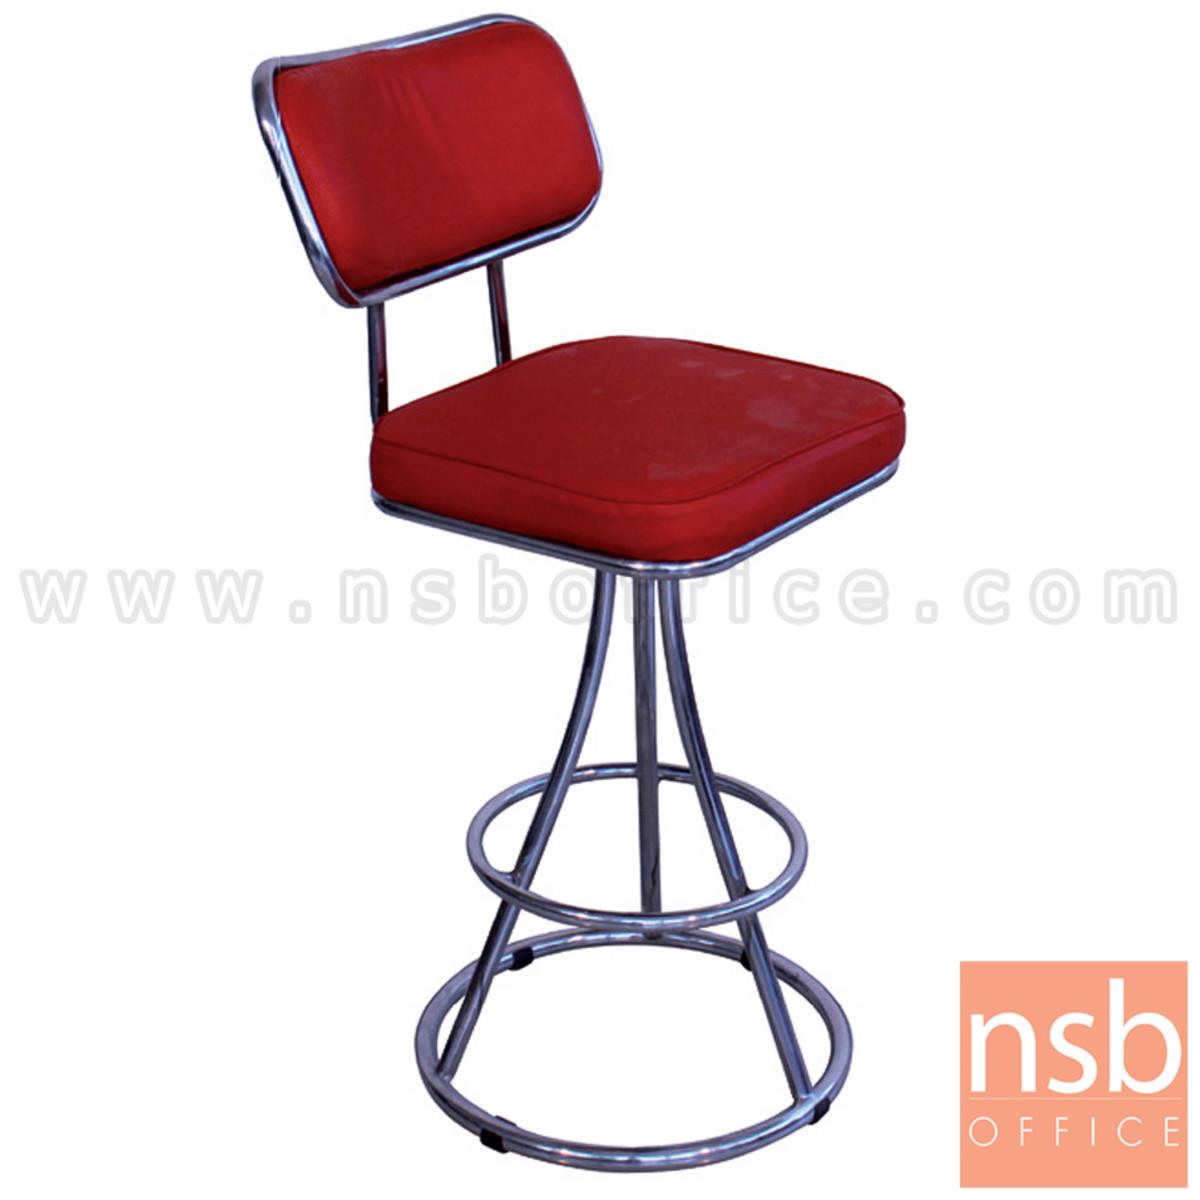 B09A219:เก้าอี้บาร์ที่นั่งเหลี่ยมมีพิง ขาทรงพีระมิด  รุ่น Whiston (วิสตัน)  ขนาด 76H cm. โครง-ขาเหล็ก 